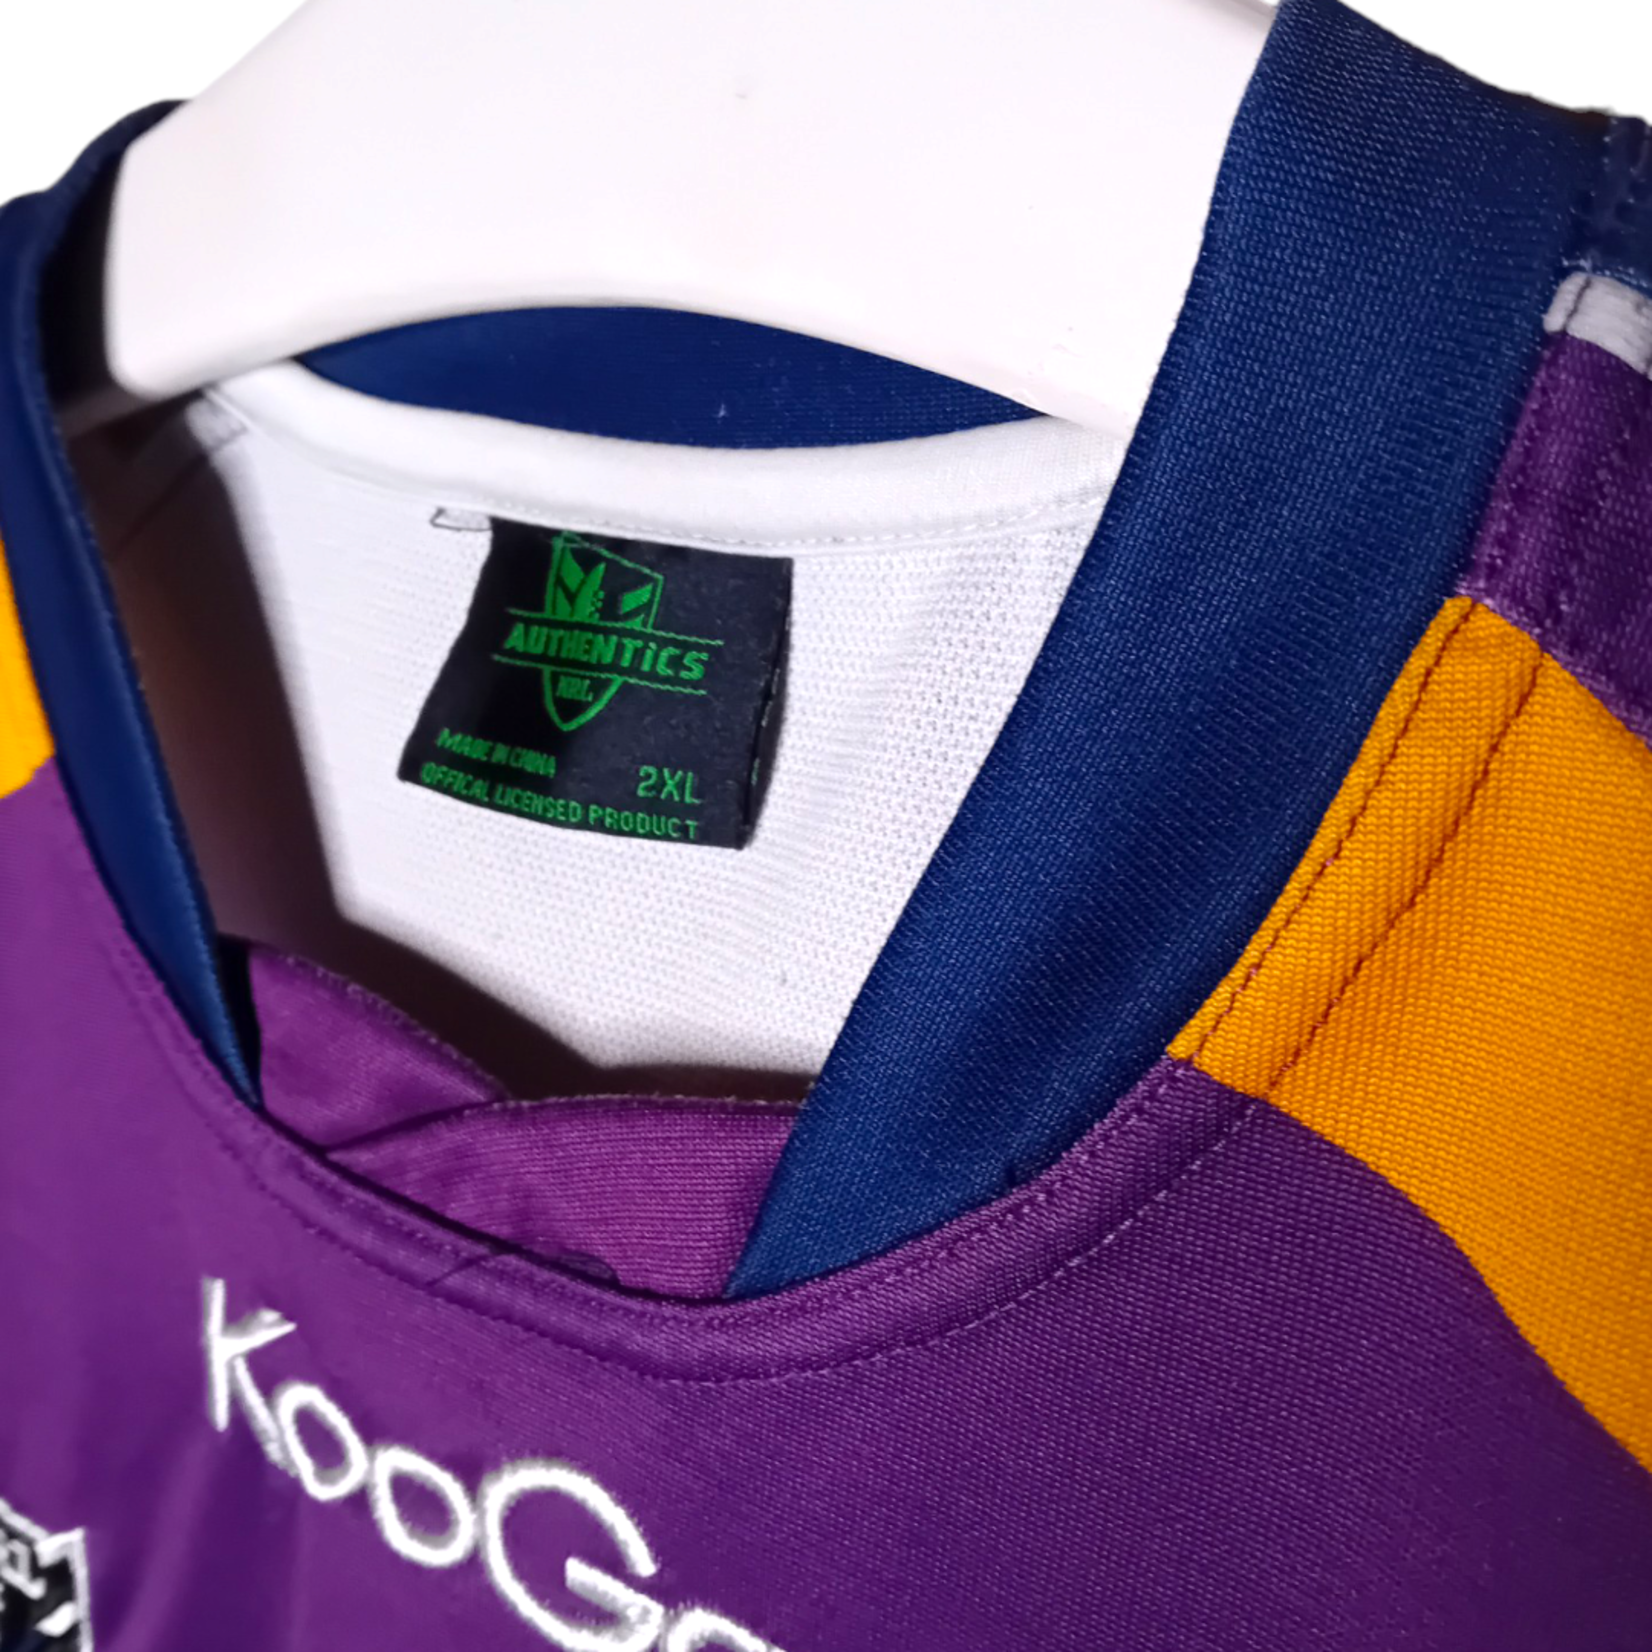 Kooga Original Kooga Vintage Rugby-Shirt Melbourne Storm 2012